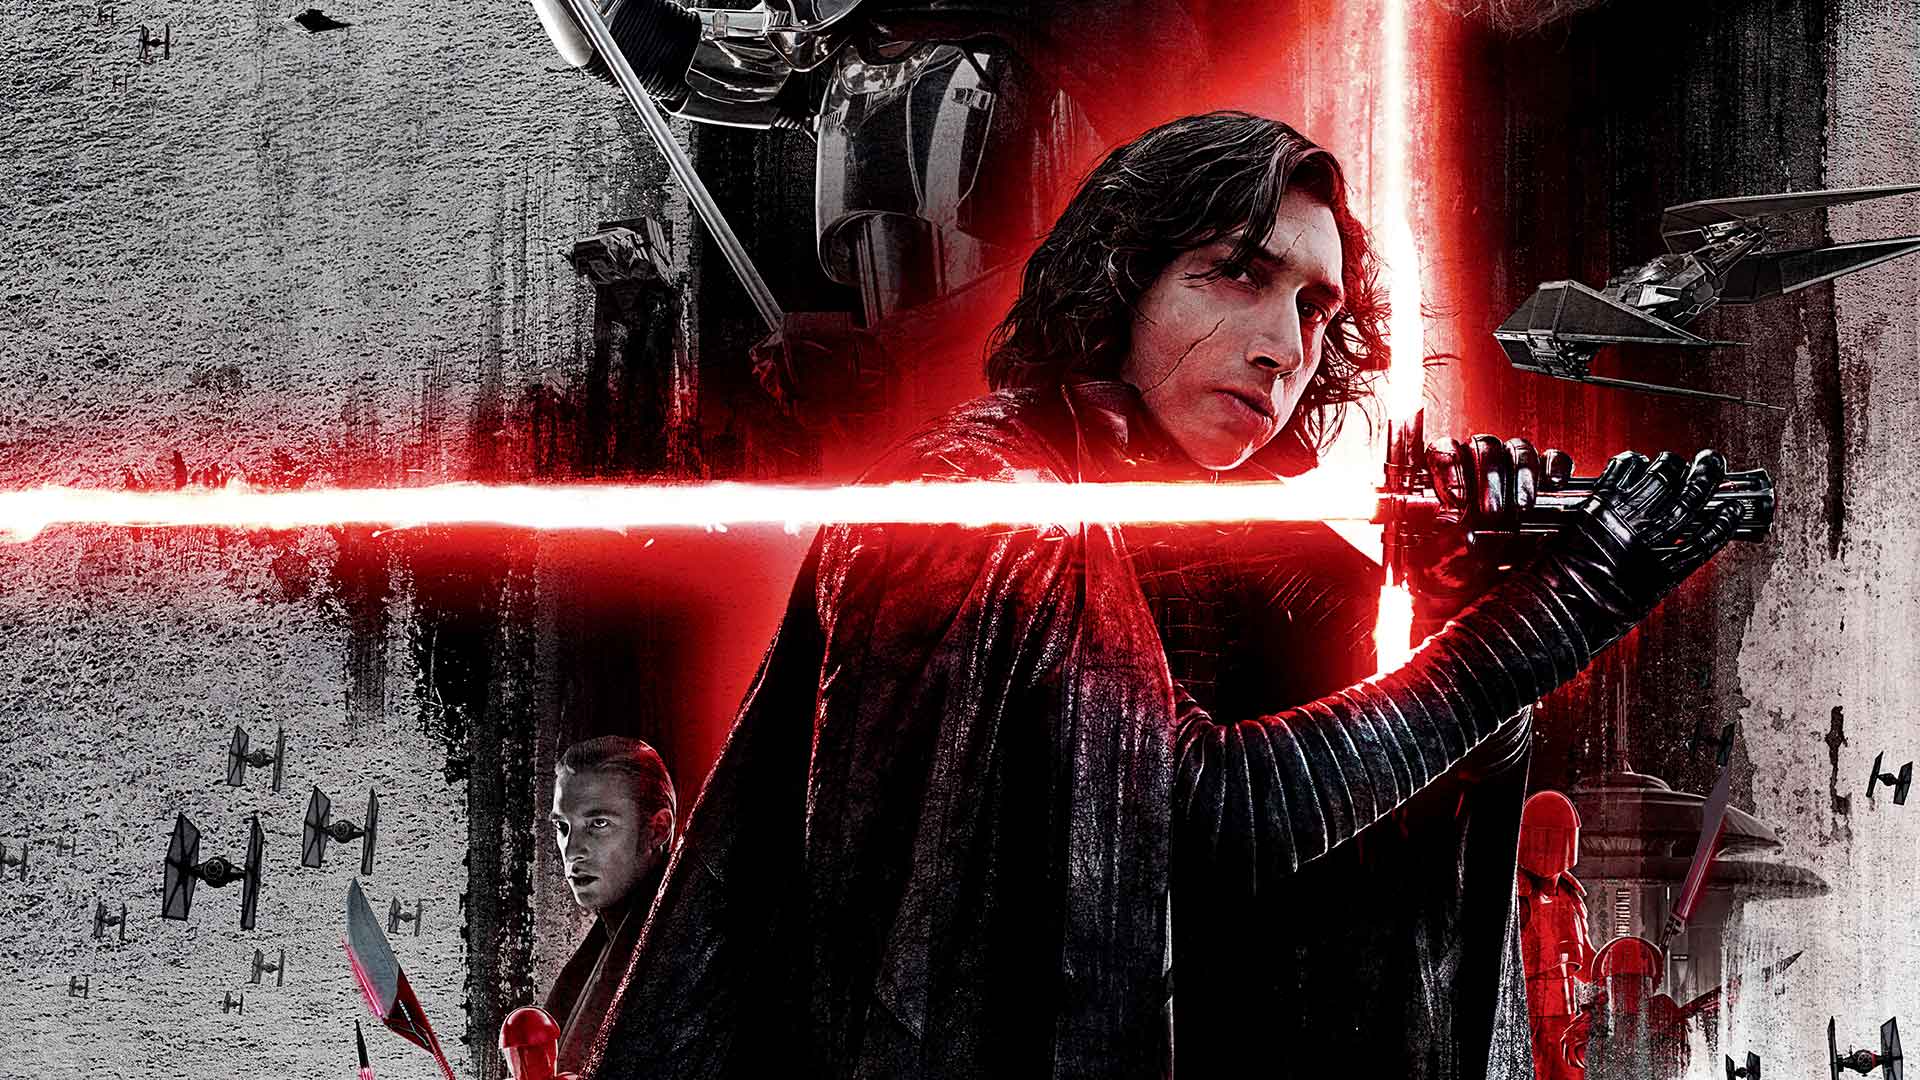 Star Wars: The Last Jedi In Concert